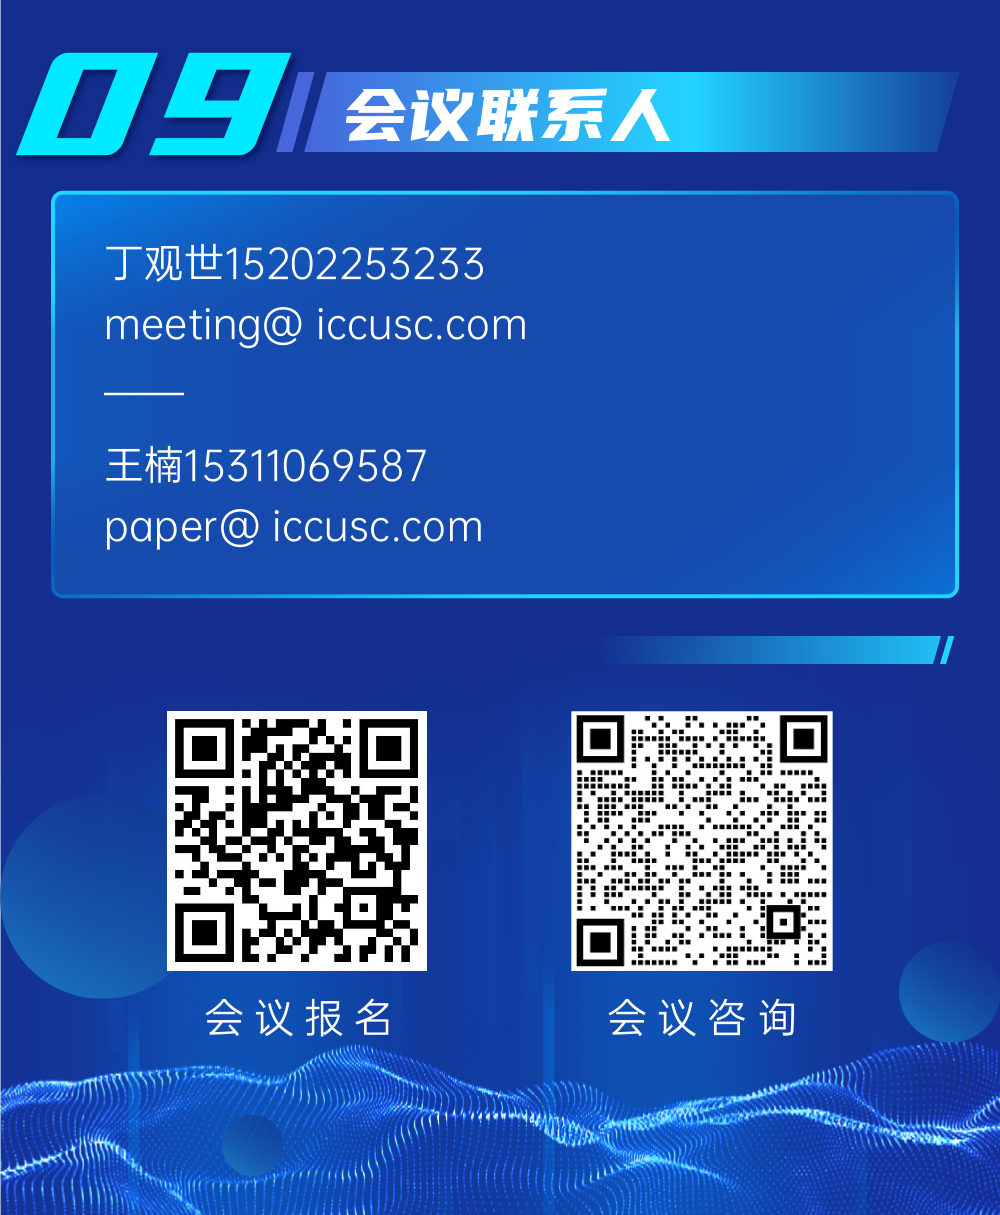 定了！20+院士！中国石油大学（北京）CCUS国际会议即将召开！